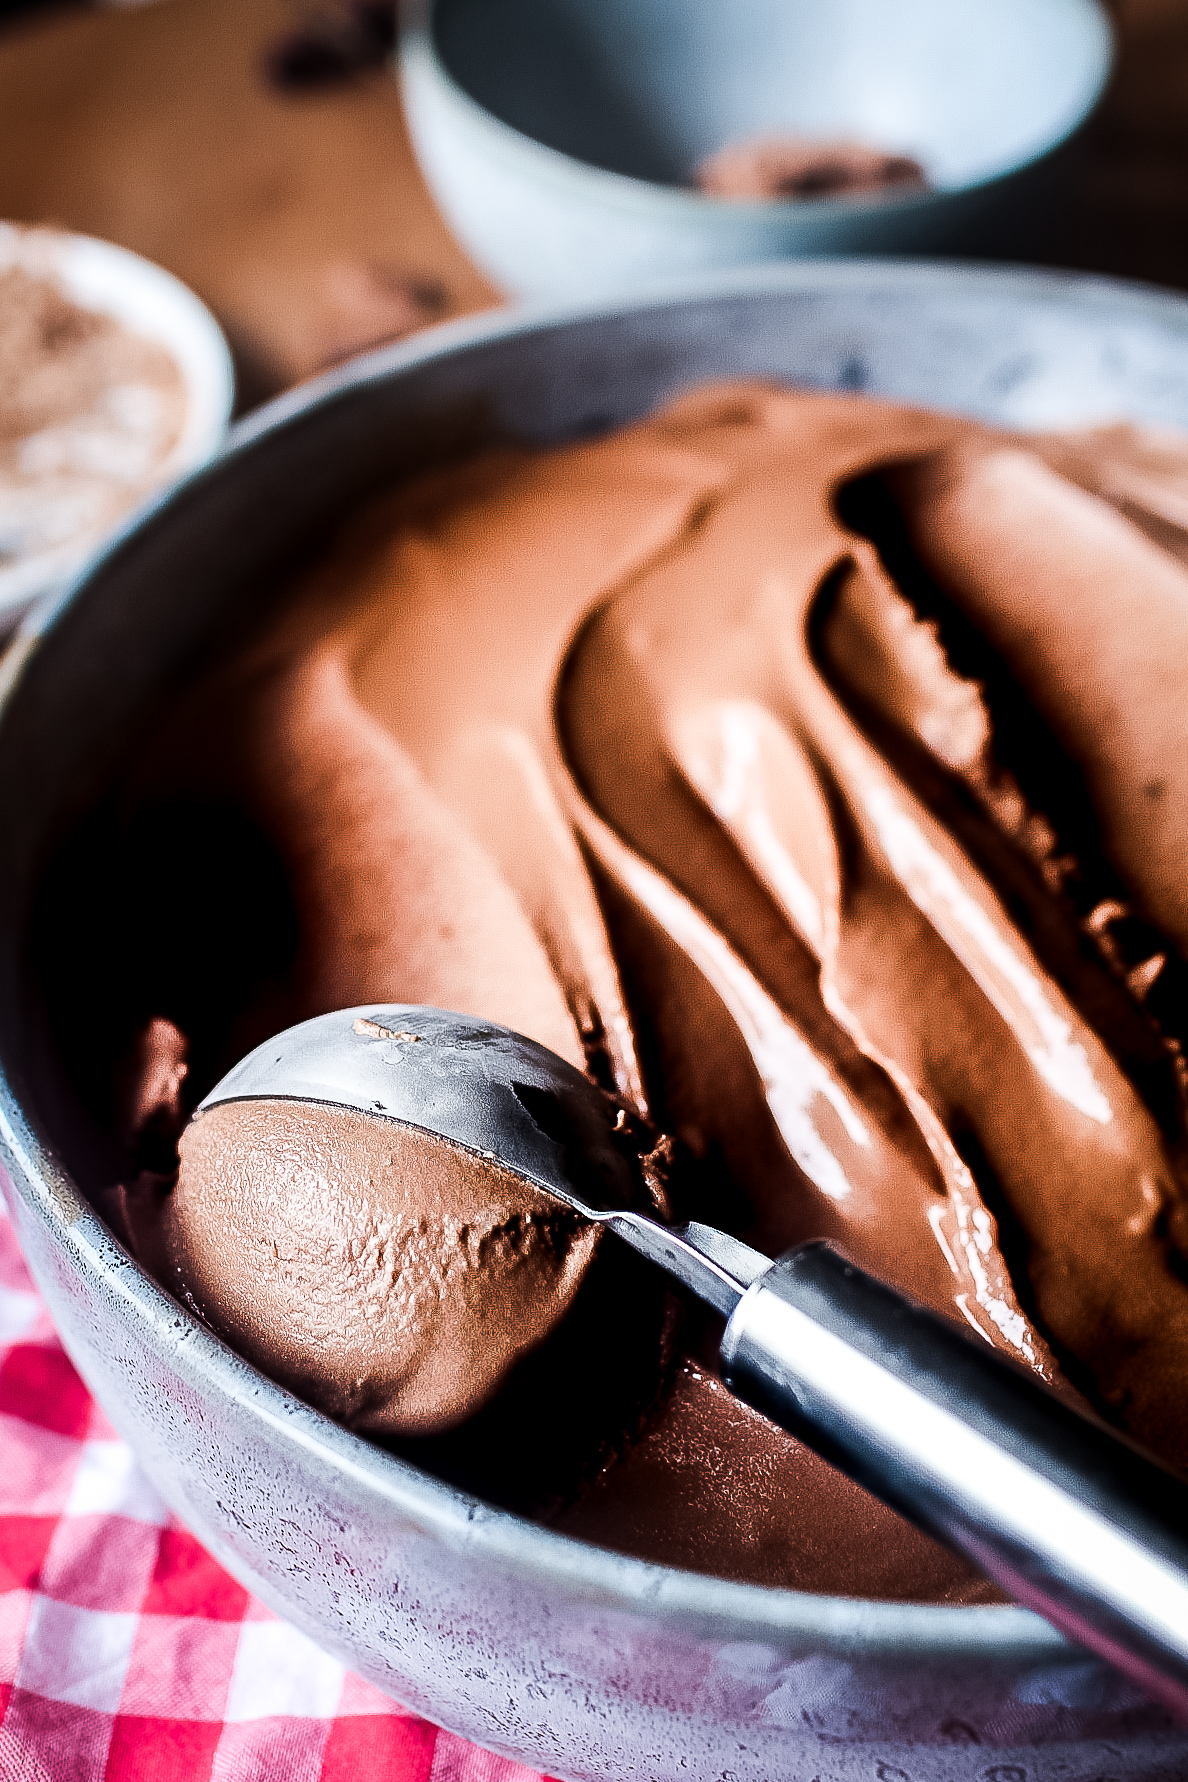 Recette facile et rapide de glace au chocolat